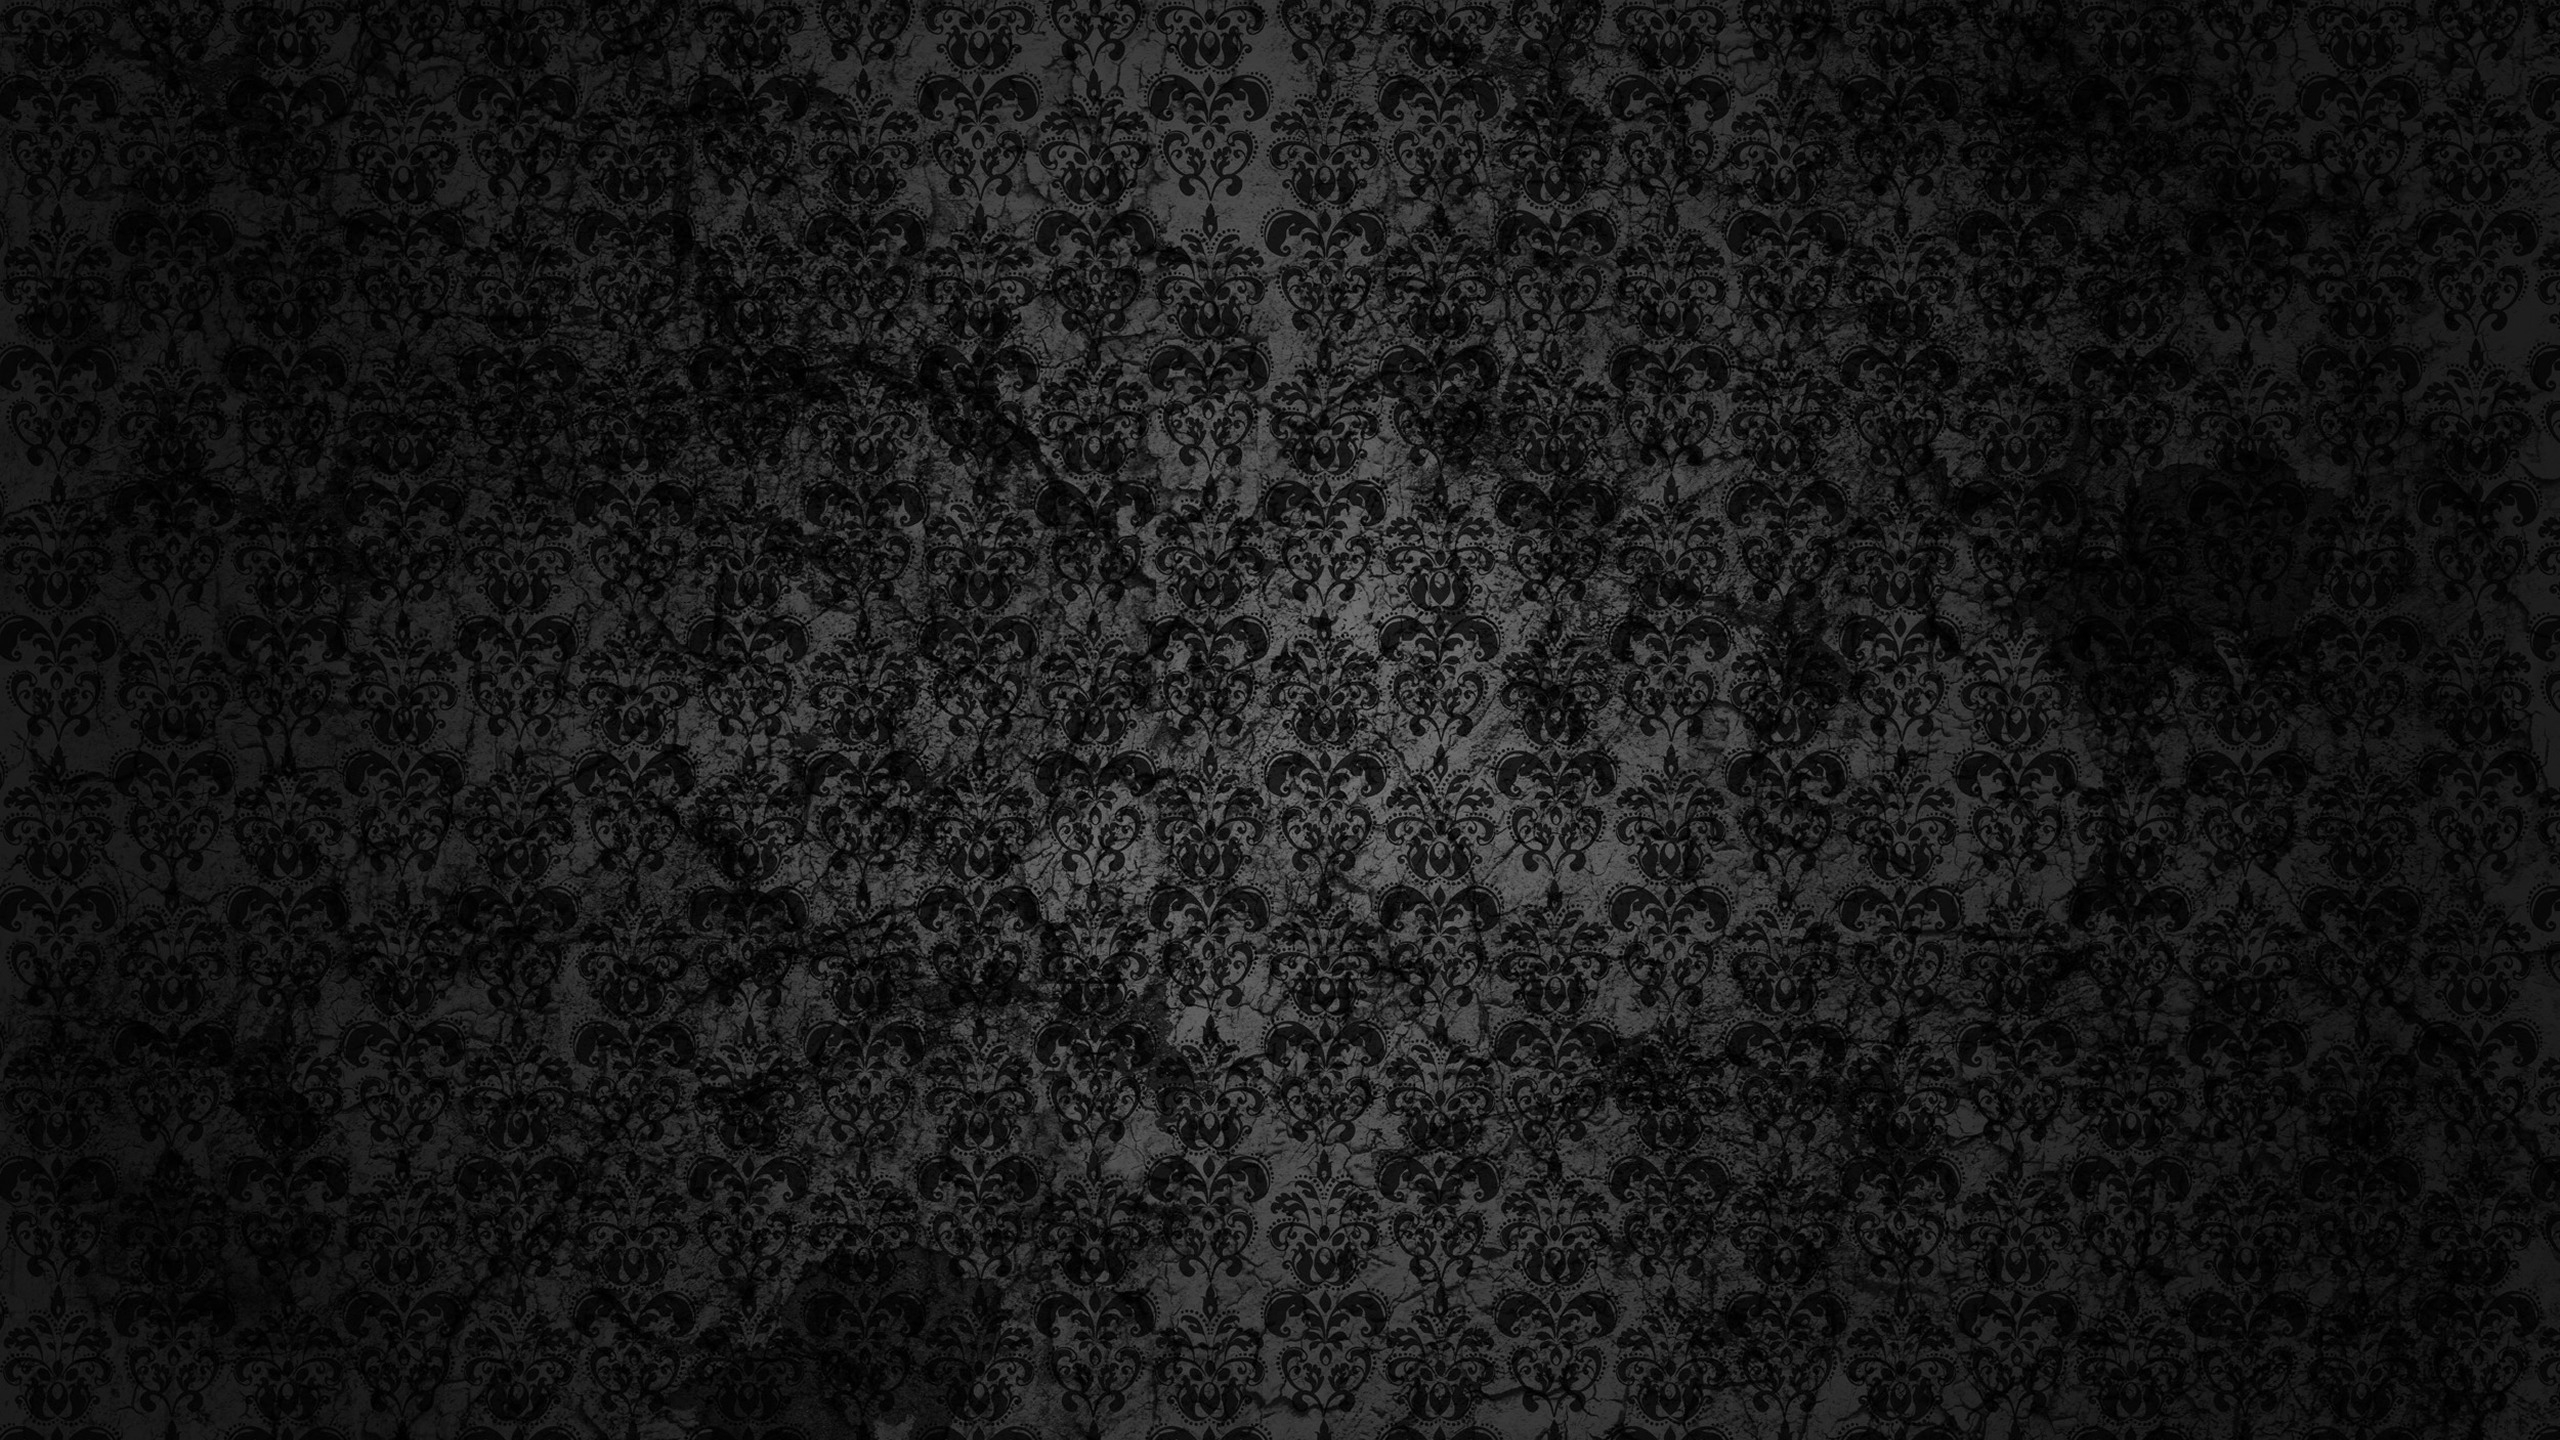 Black Floral Grunge for 2560x1440 HDTV resolution